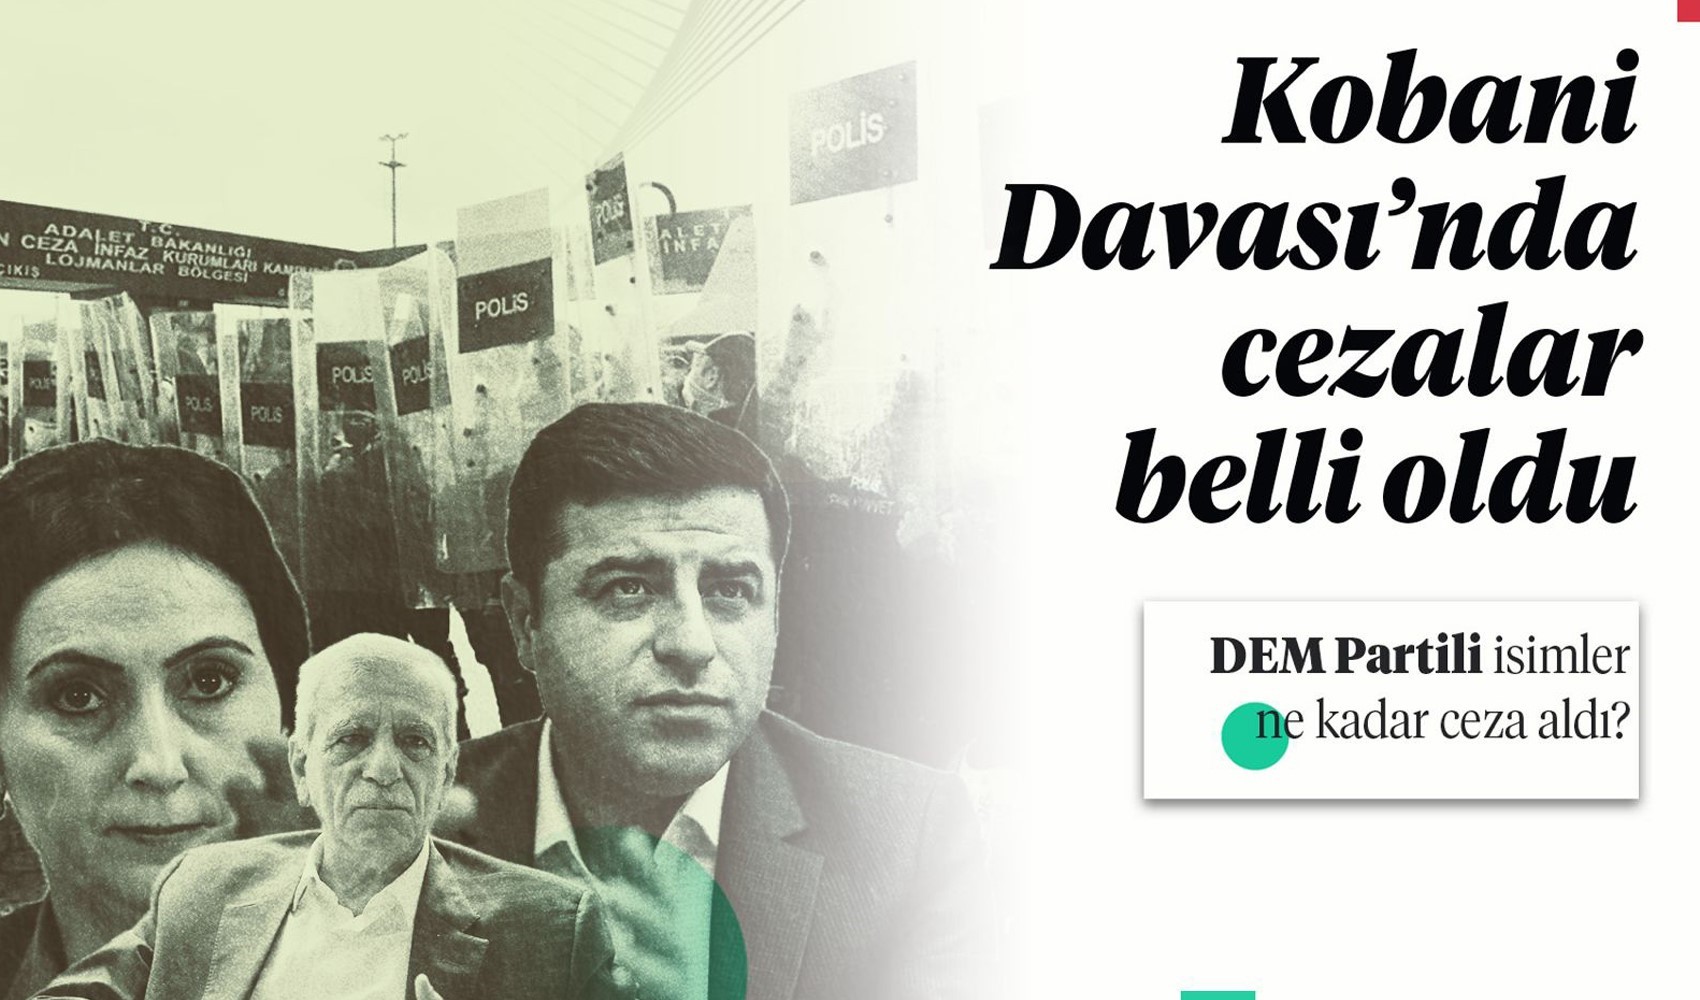 Demirtaş, Yüksekdağ ve Ahmet Türk ne kadar ceza aldı?